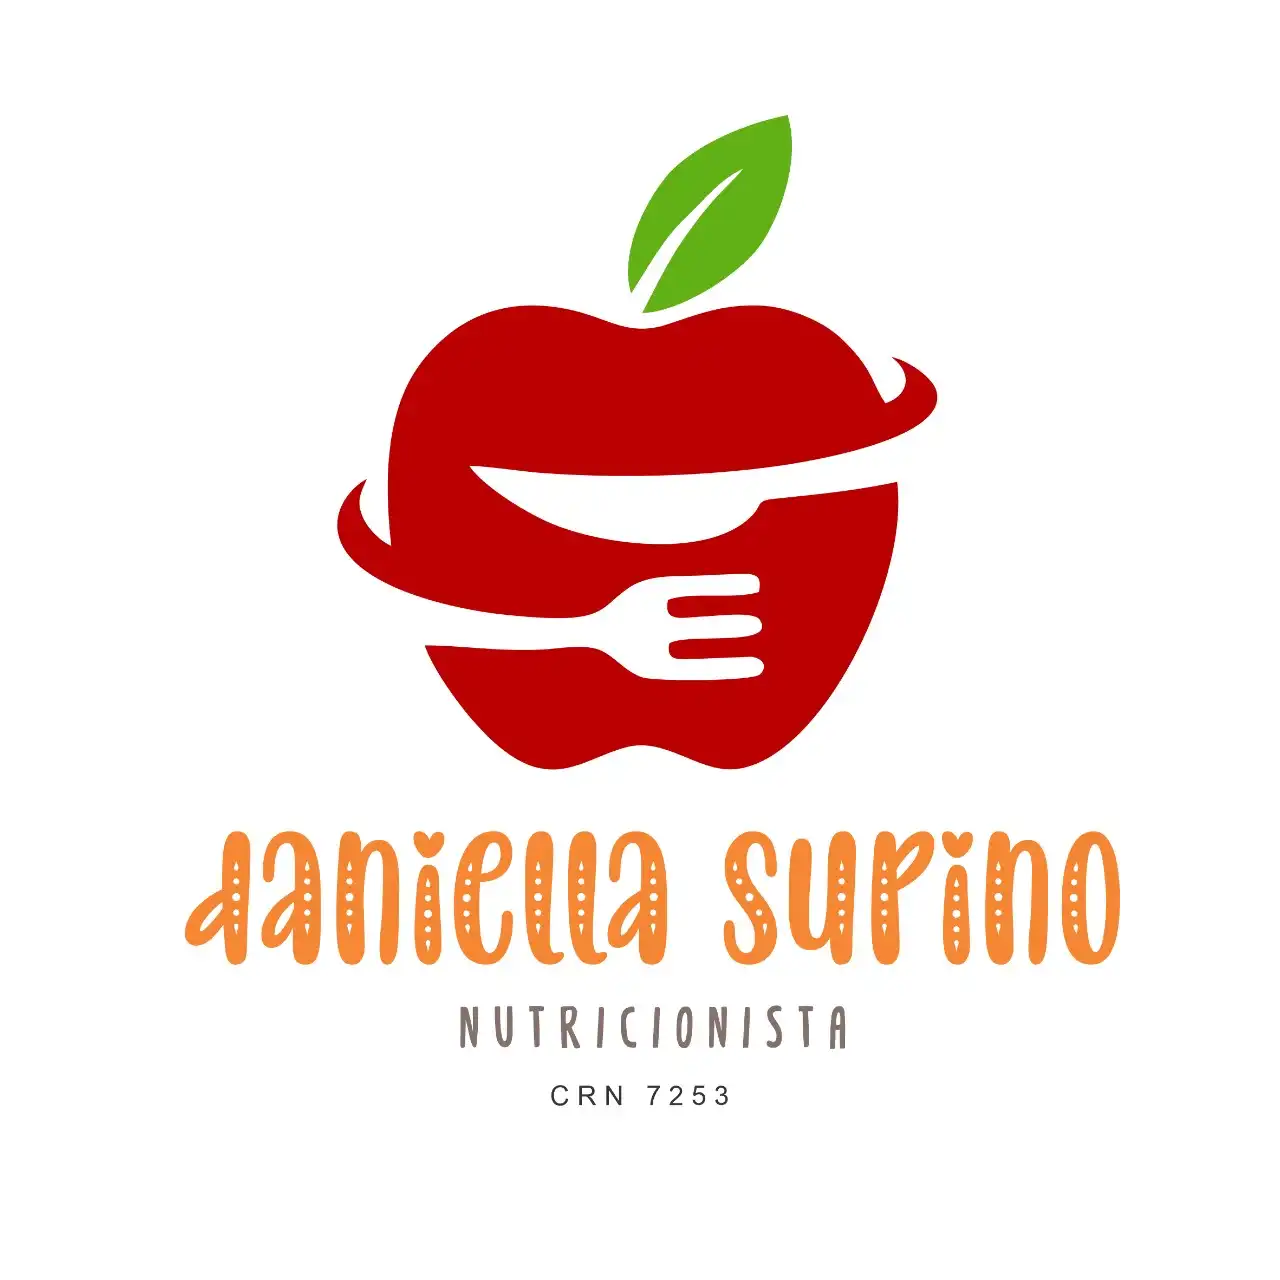 
Logotipo Logomarca Slogan Nutricionista



